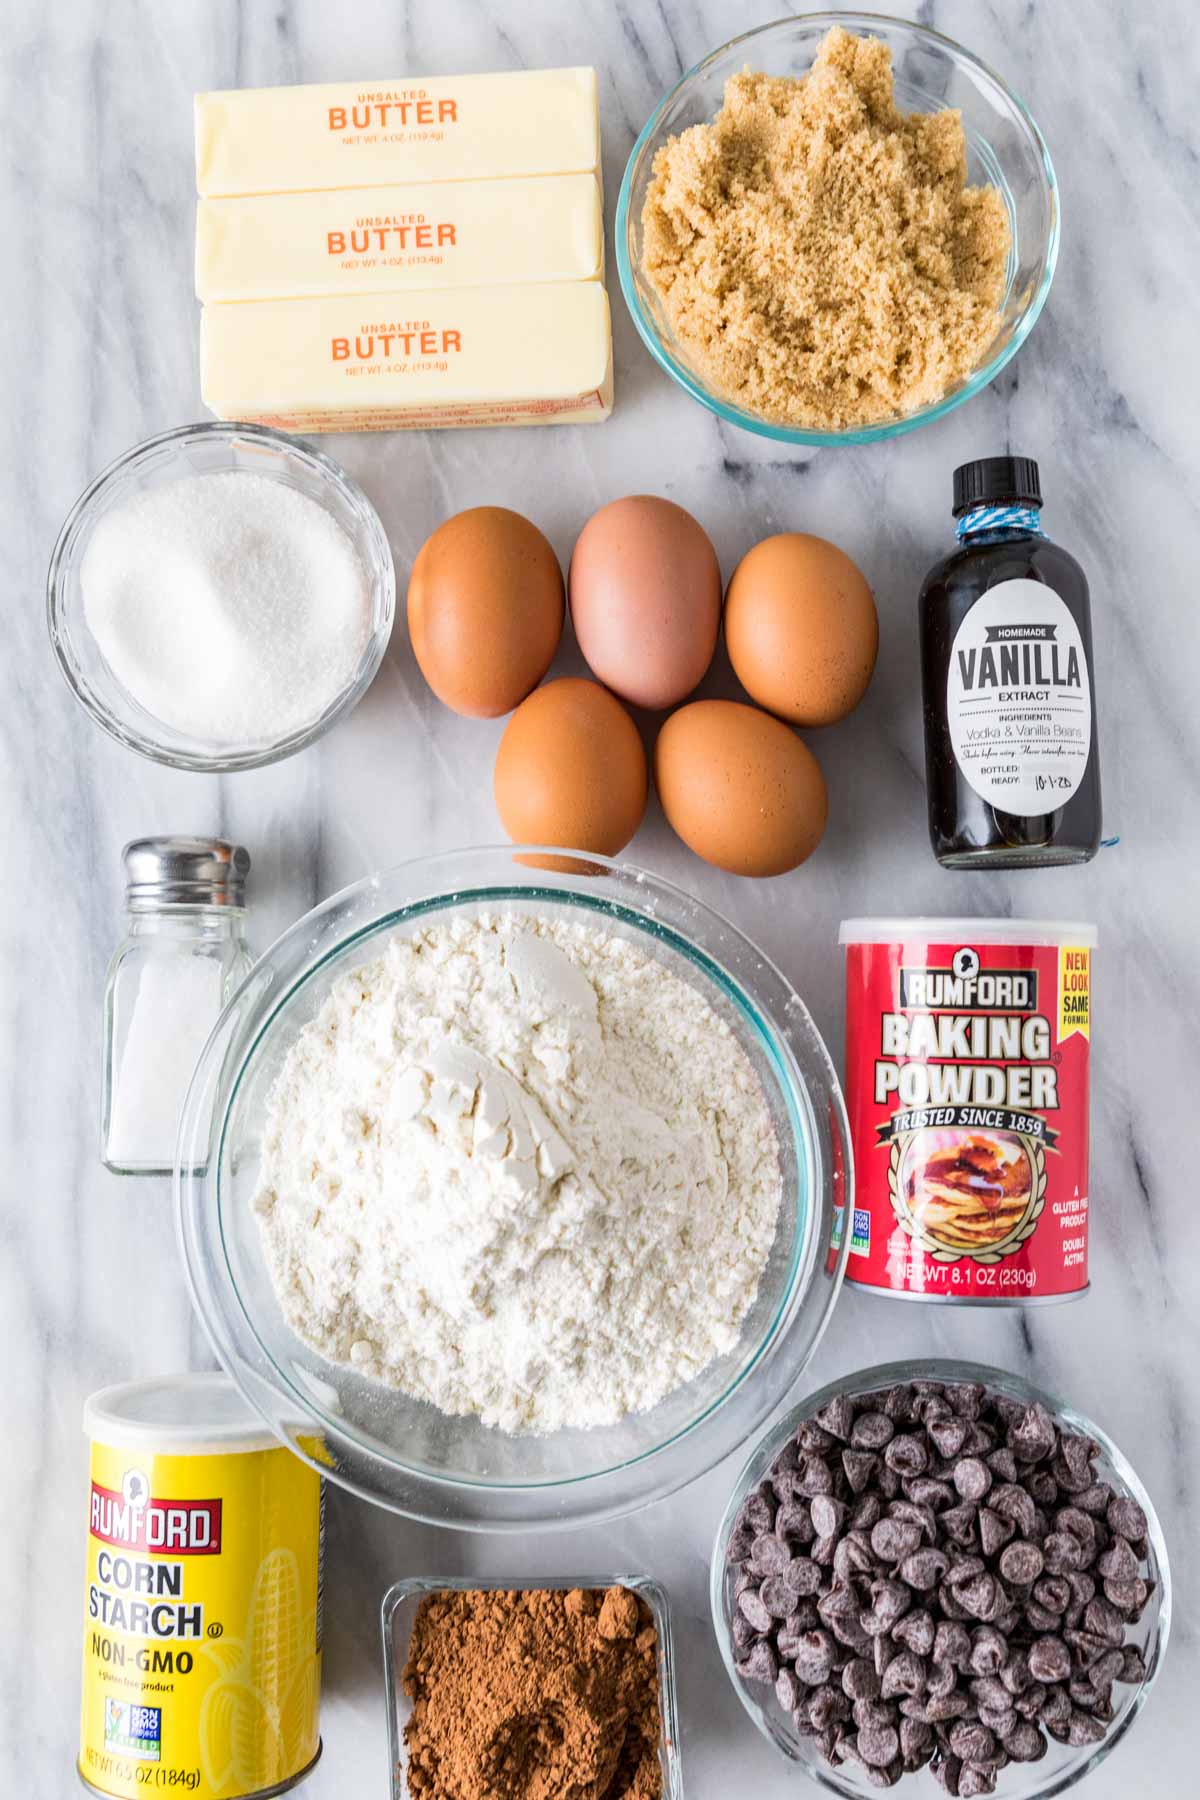 Ingredients needed to make brookie batter